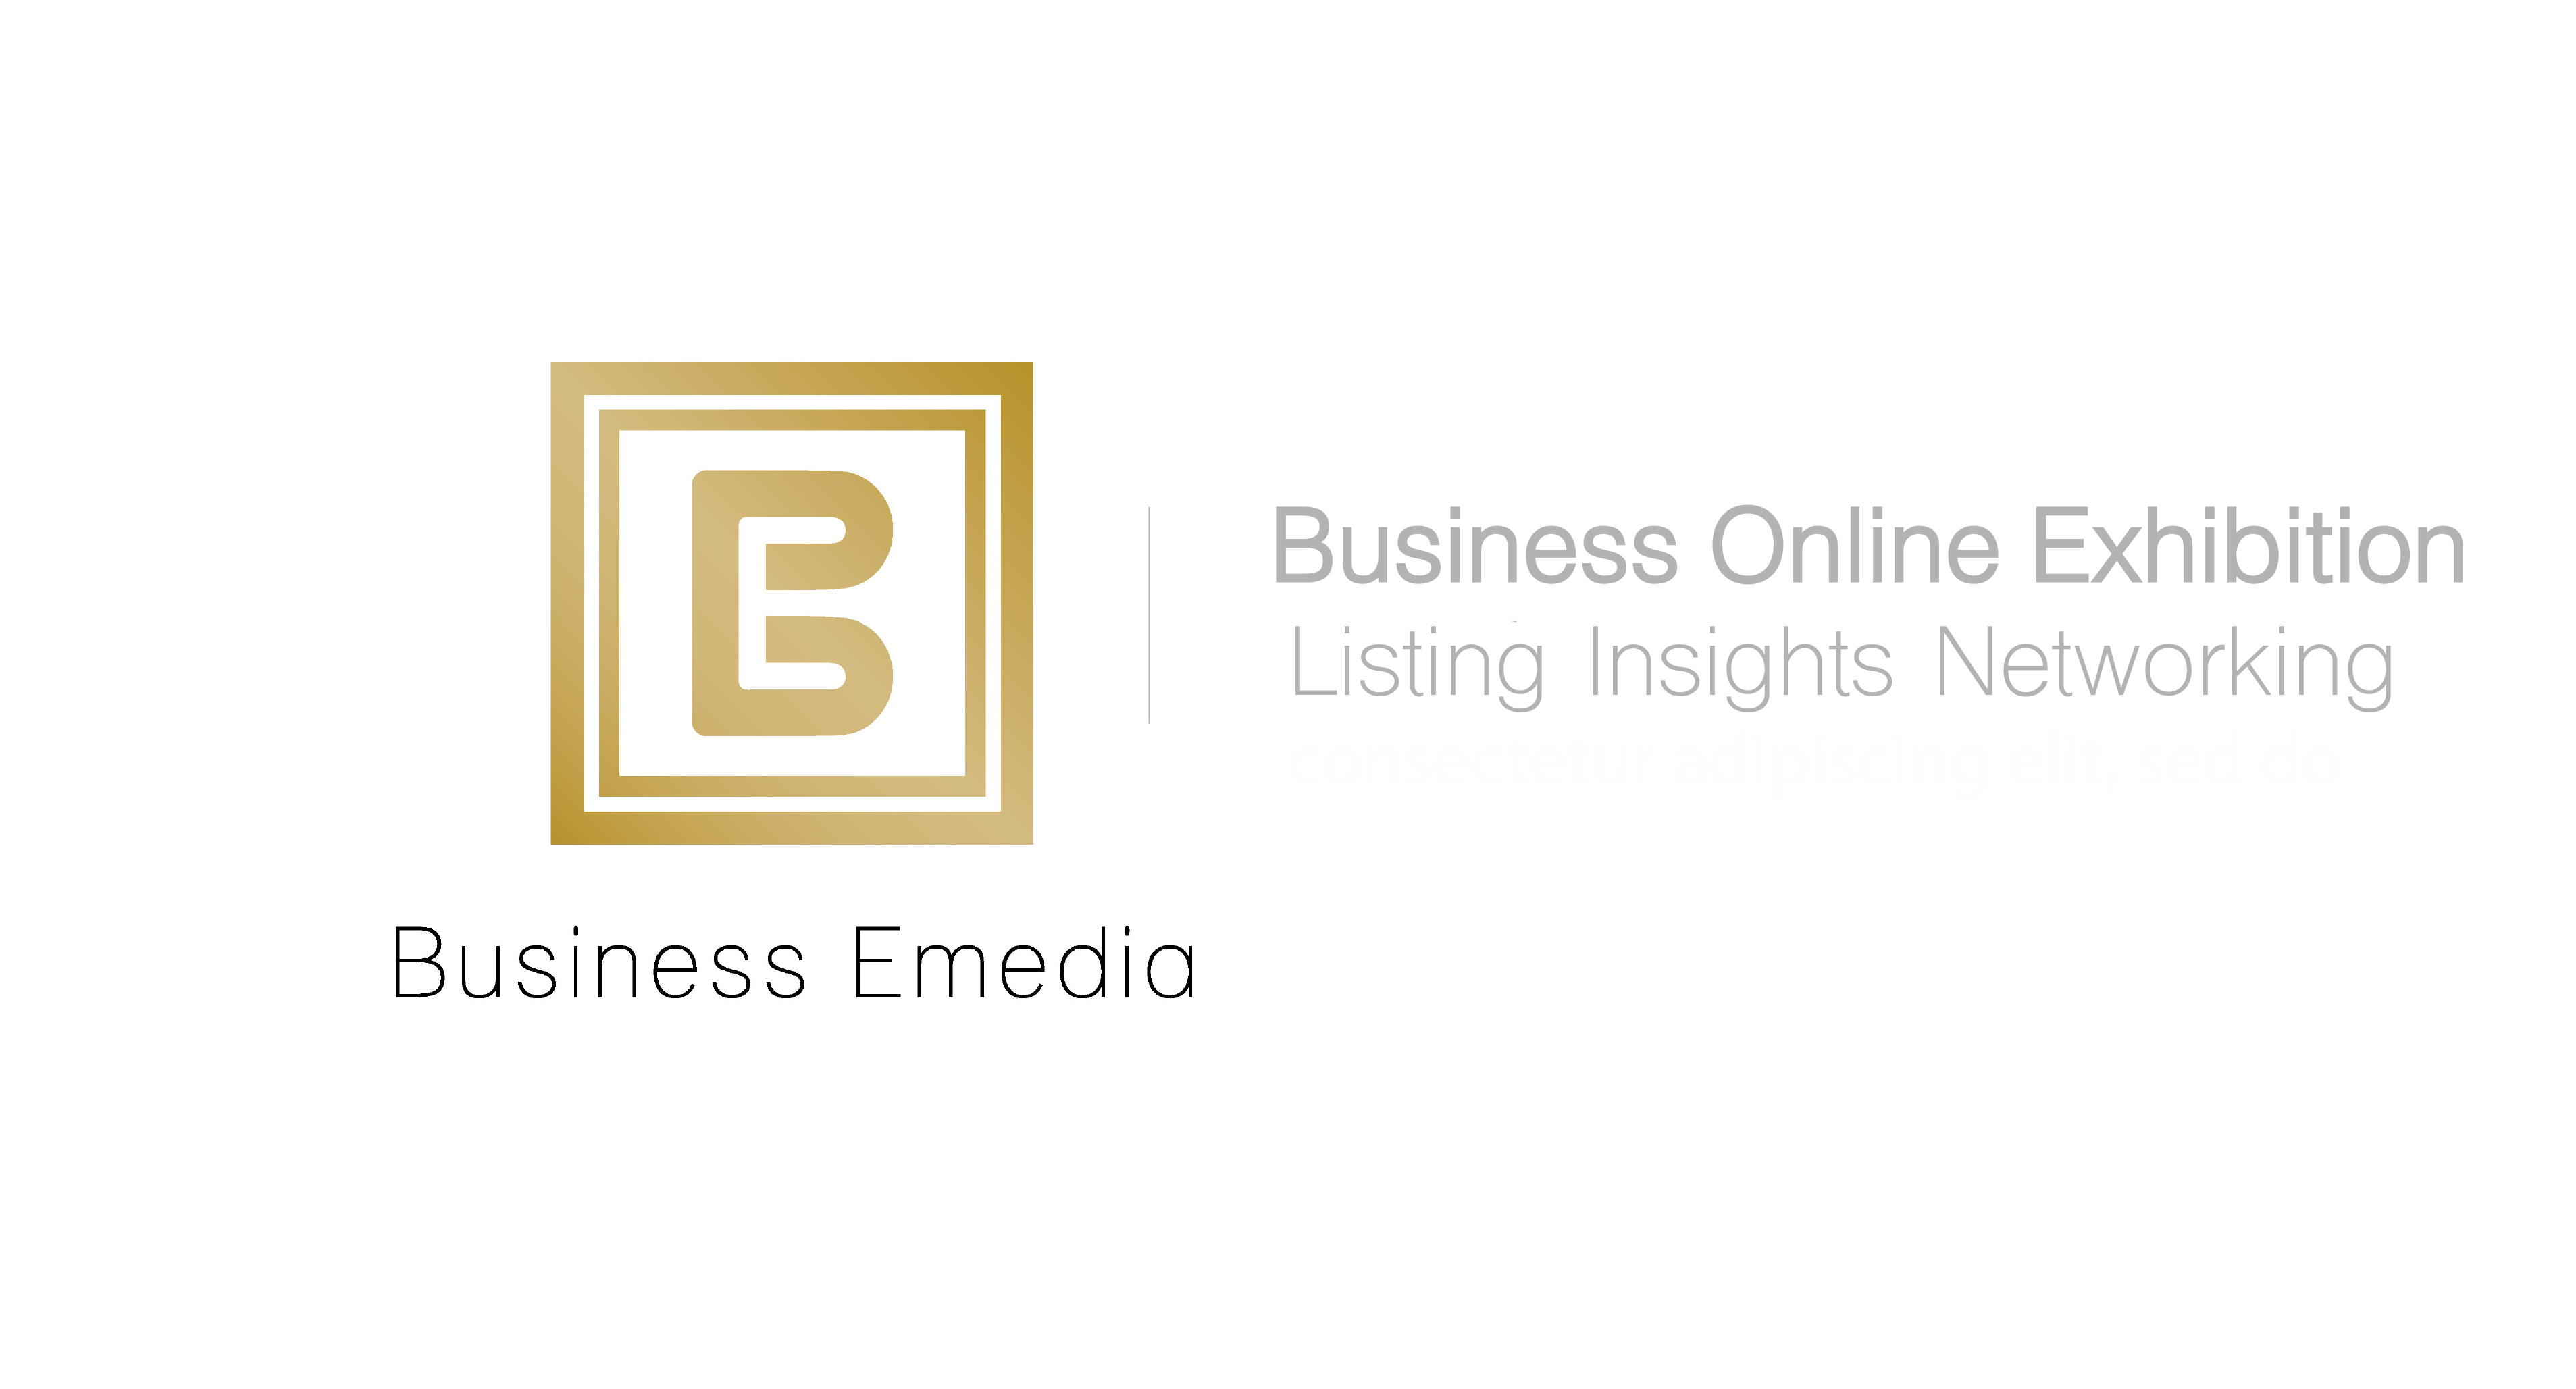 Business Emedia